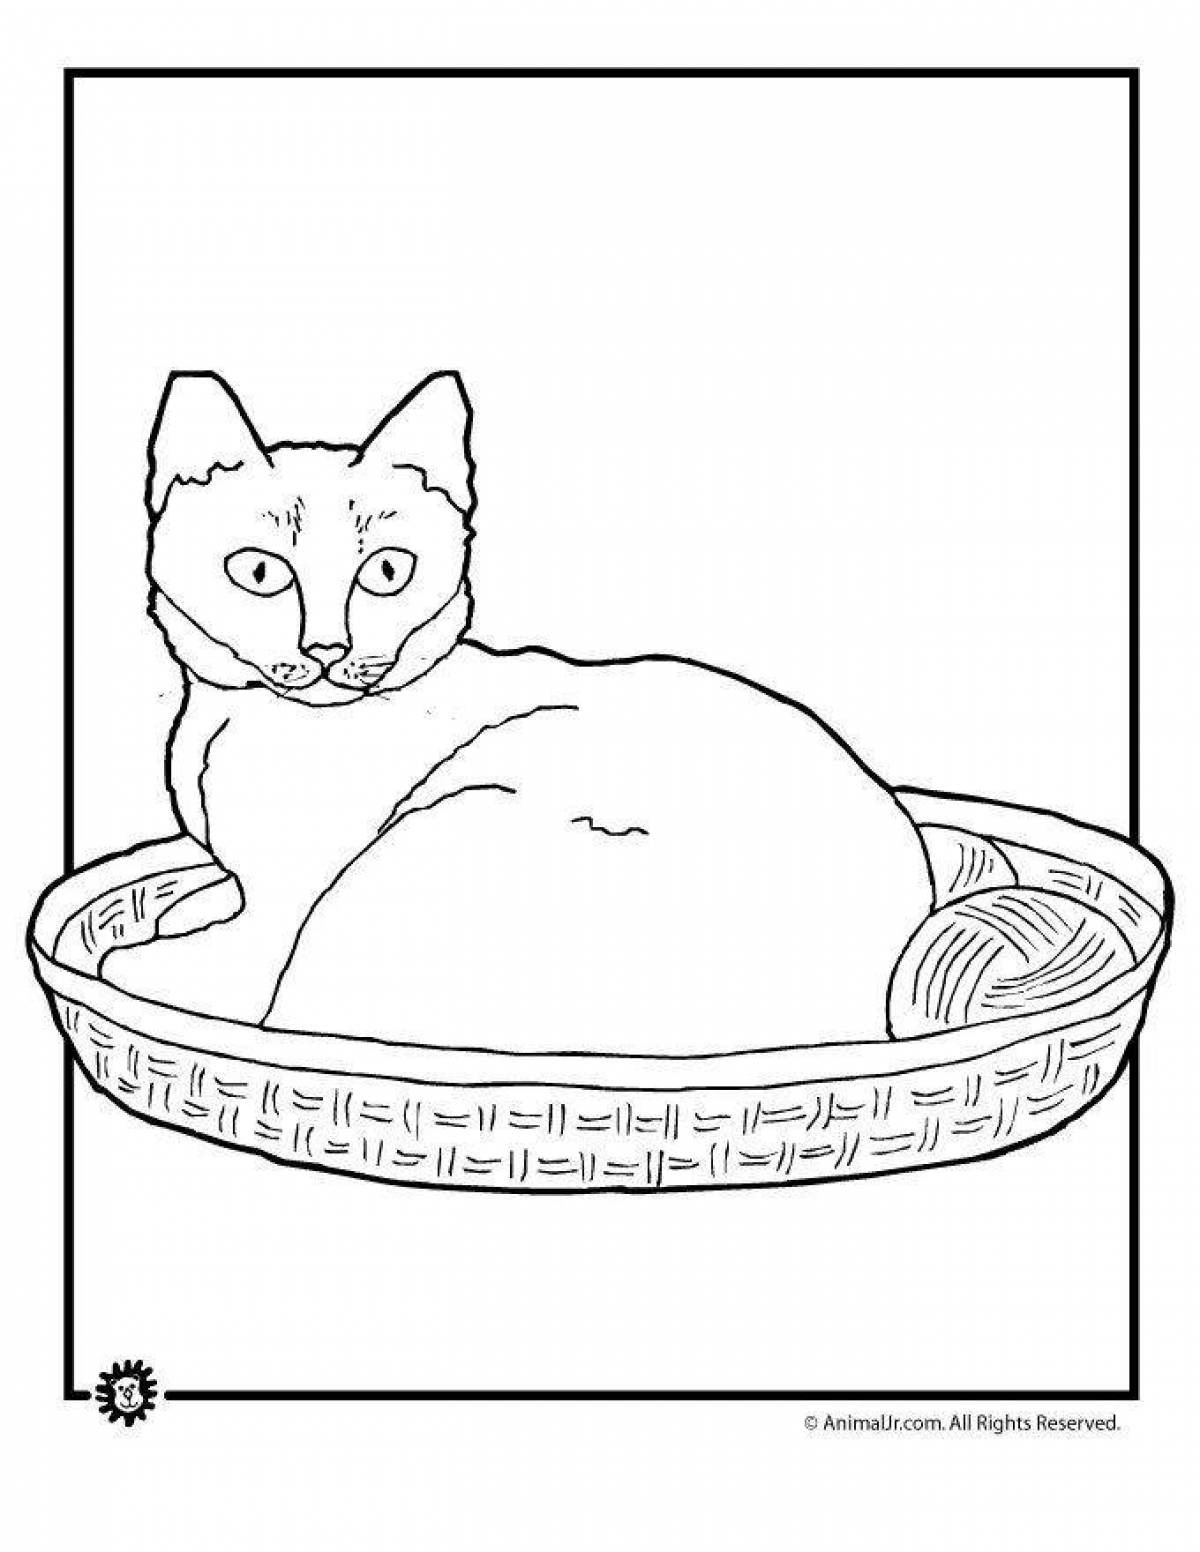 Kittens in a basket #4